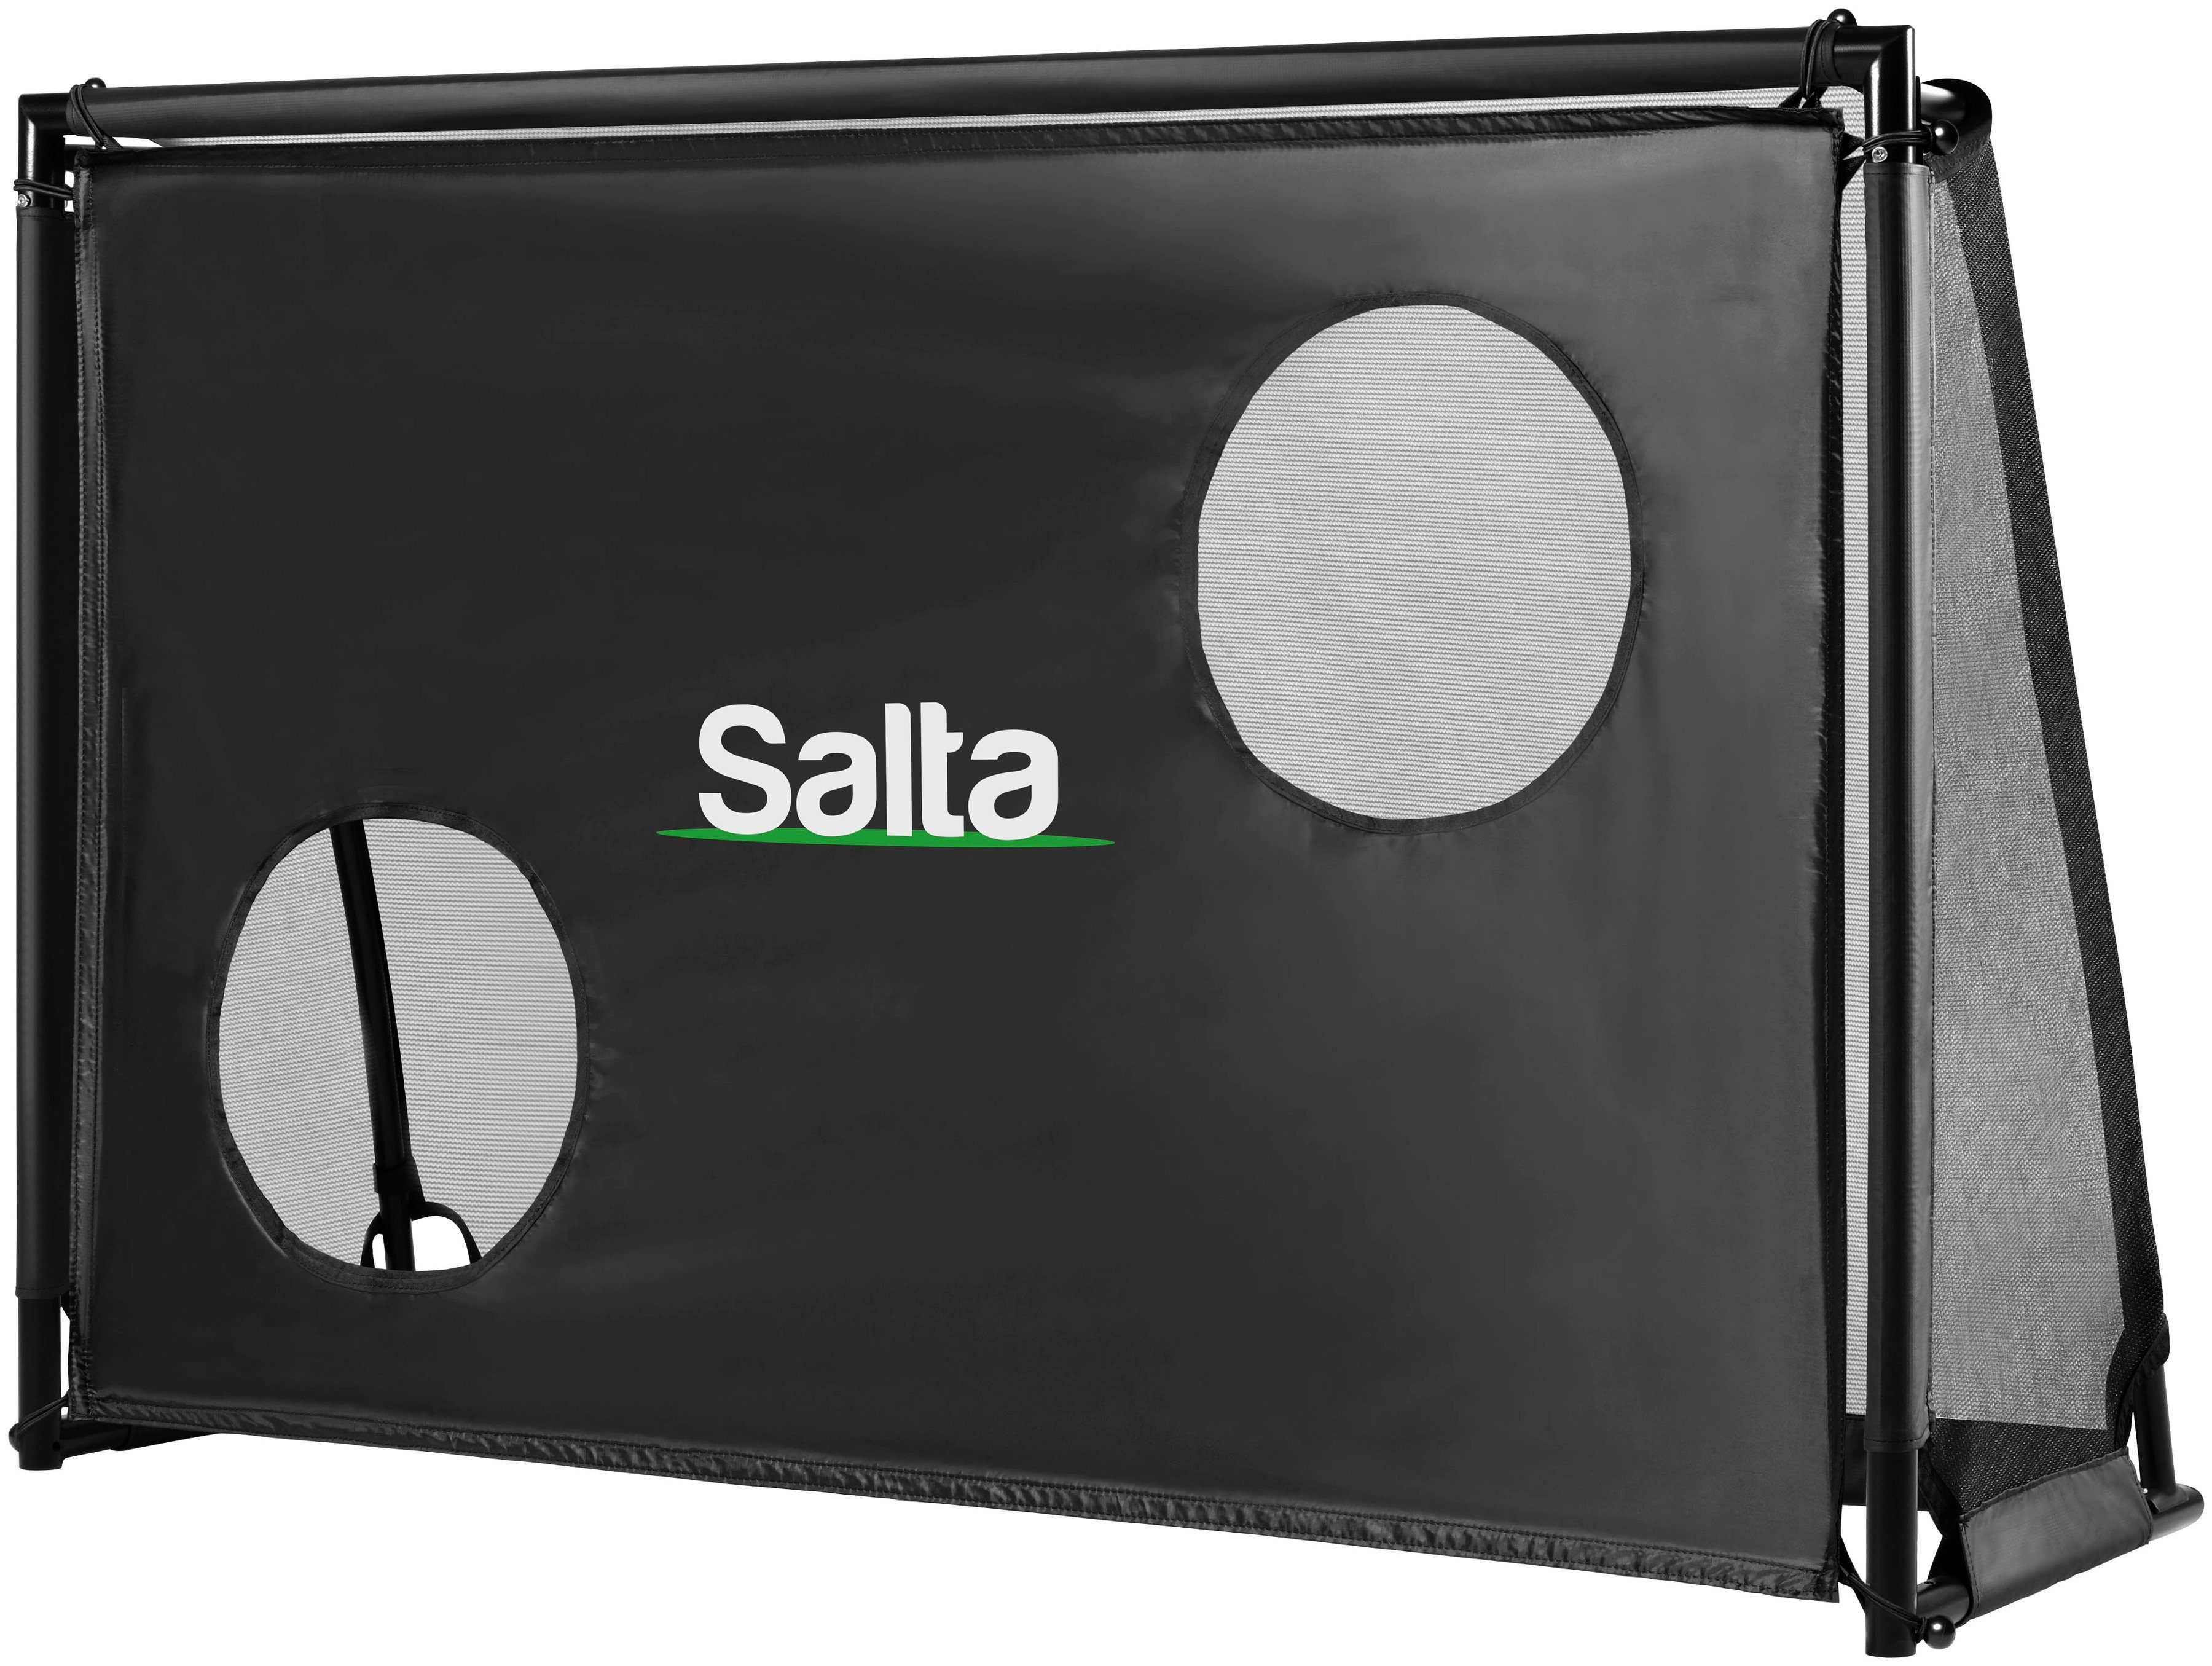 Salta Fußballtor Salta Legend, in erhältlich mit verschiedenen Größen Torwand, drei